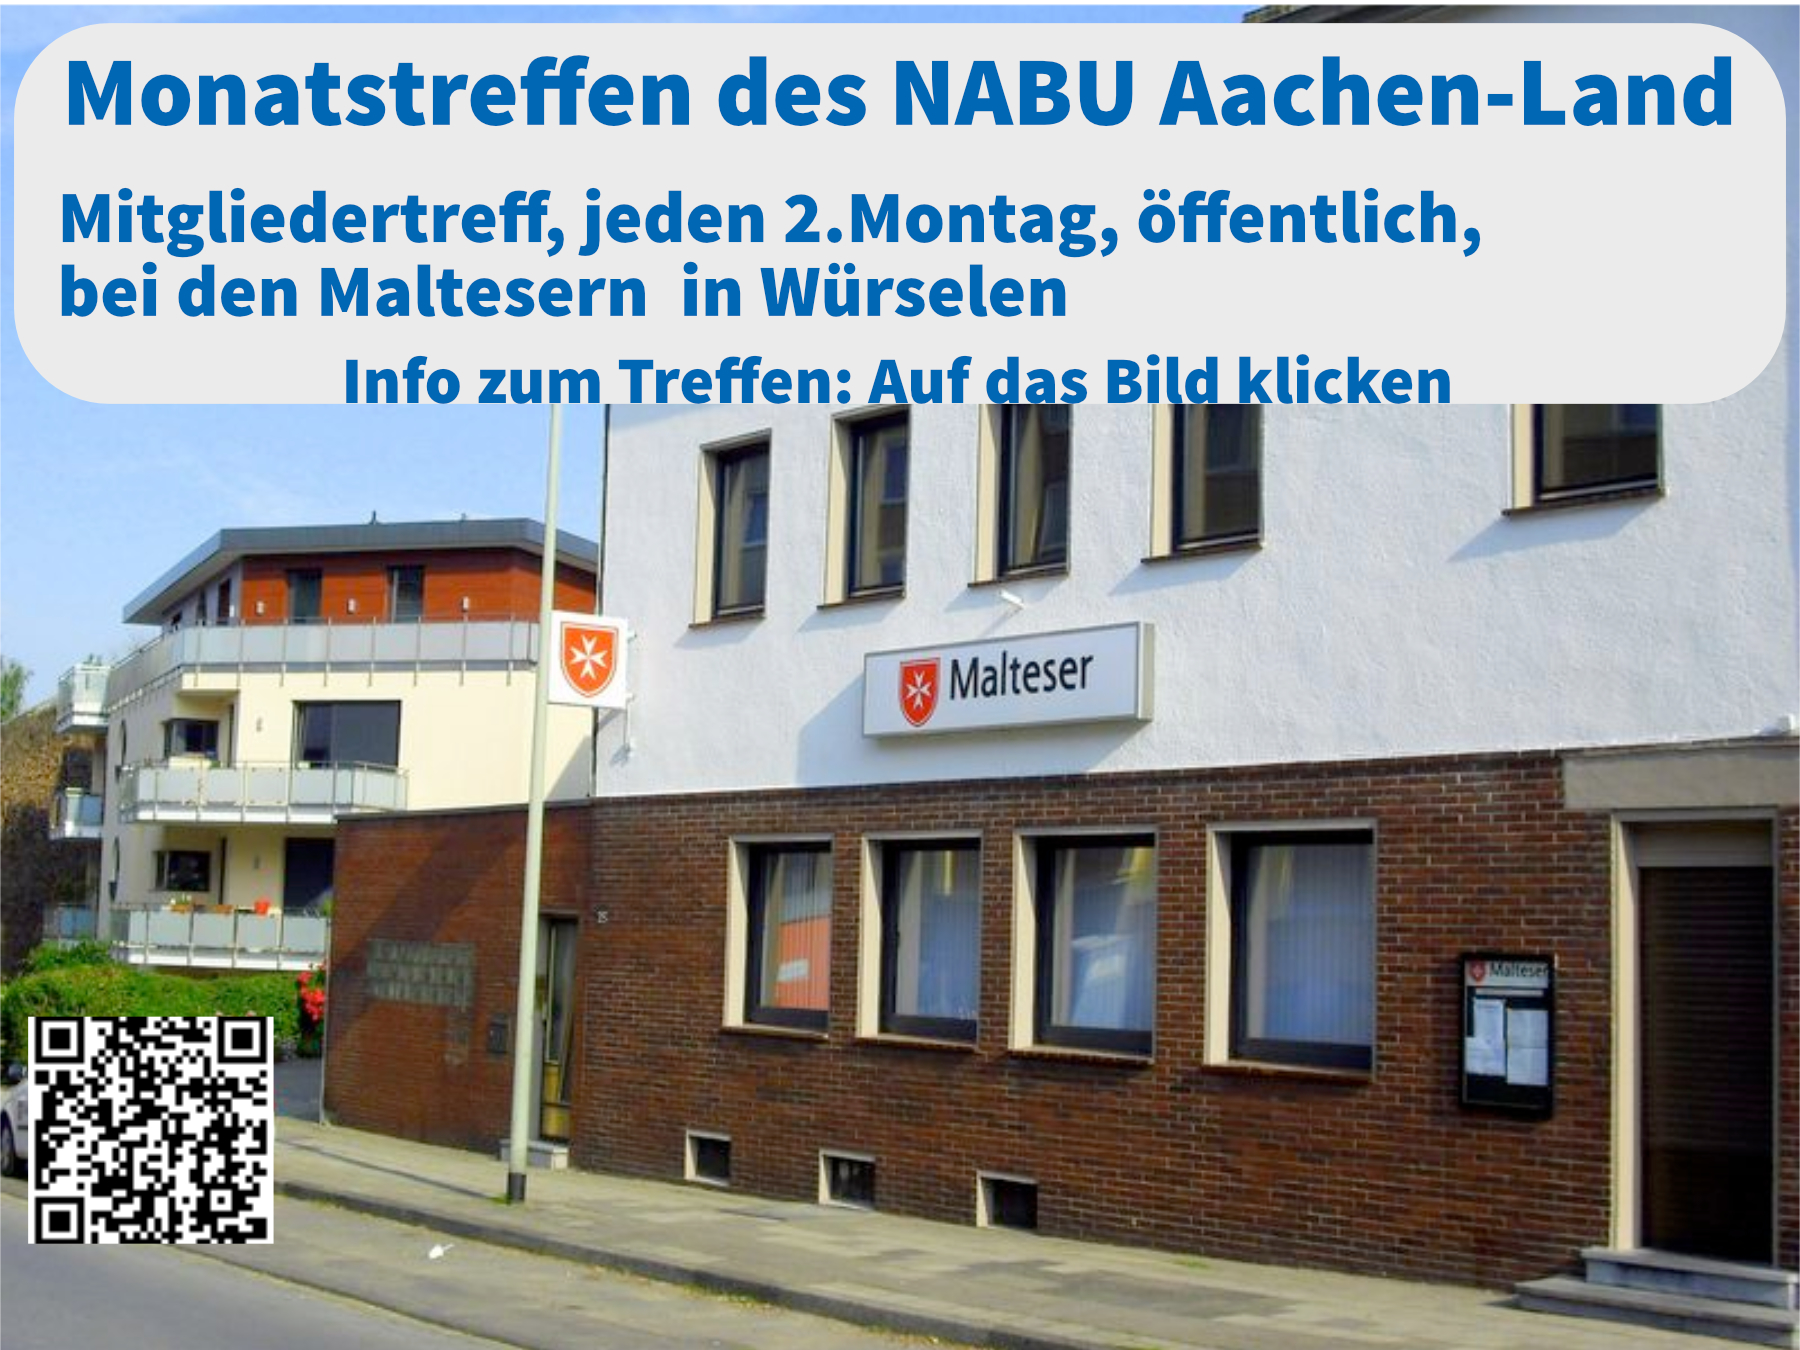 (c) Nabu-aachen-land.de